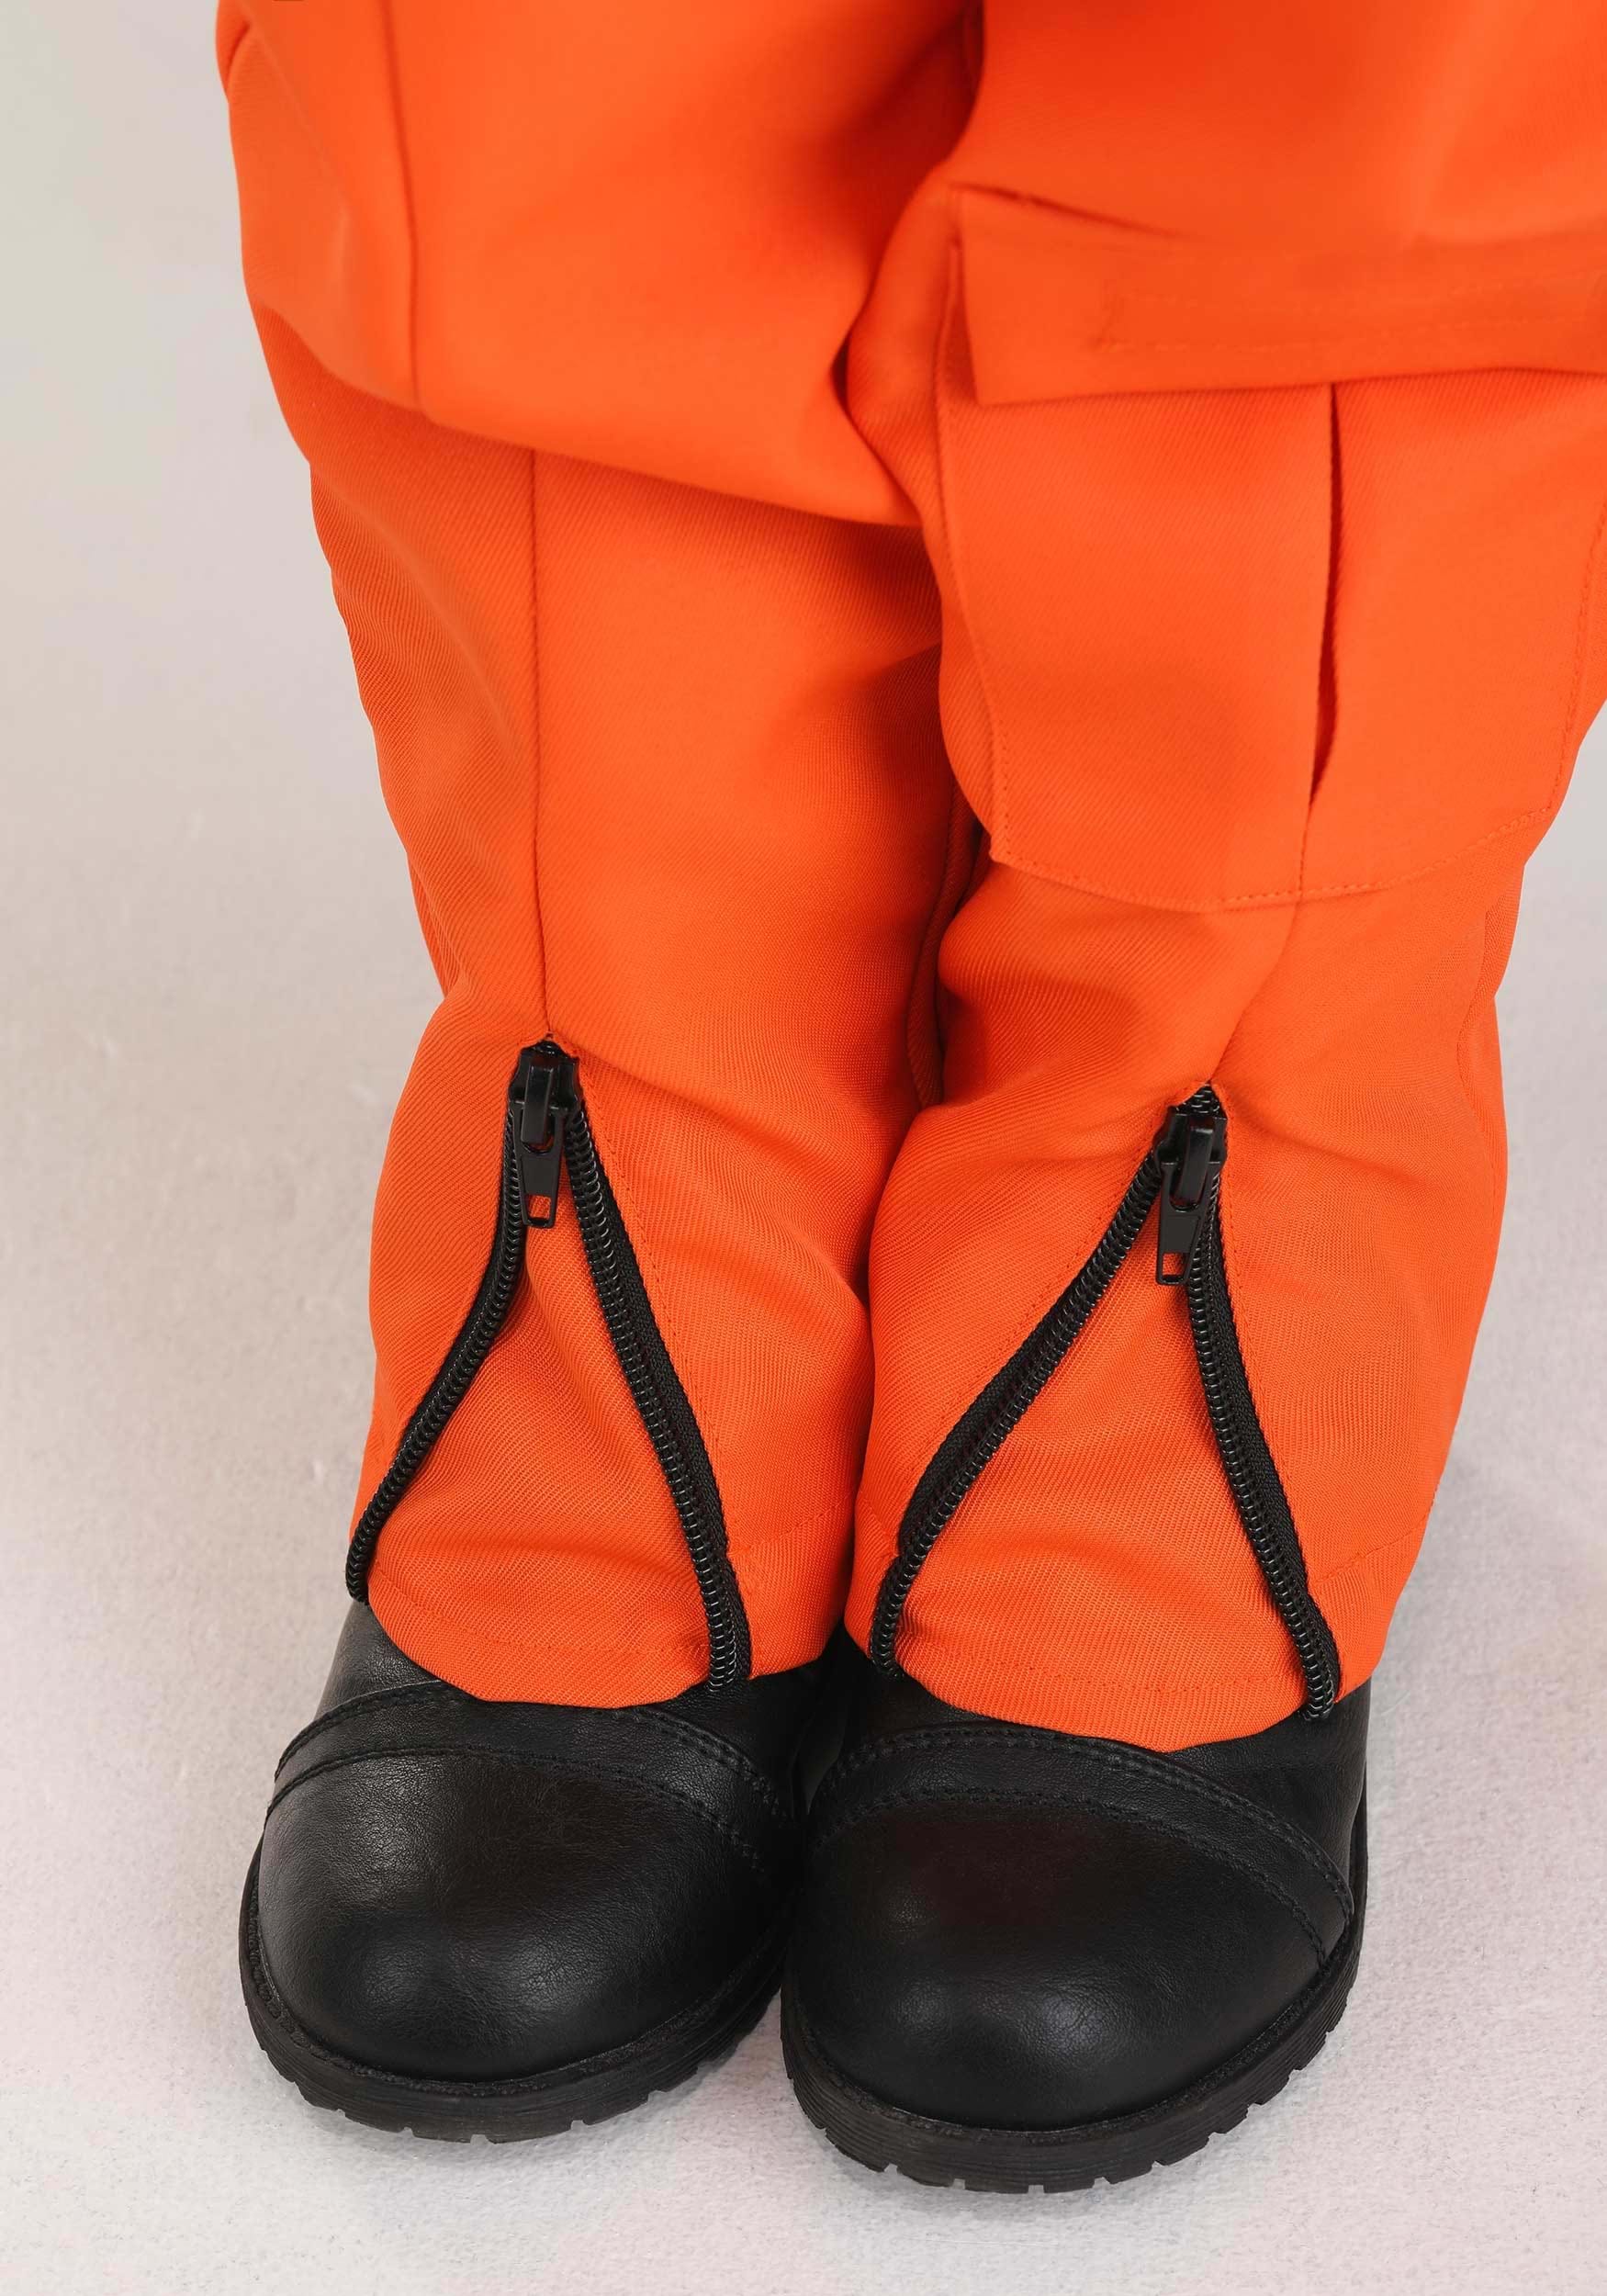 Orange Astronaut Jumpsuit Toddler Costume